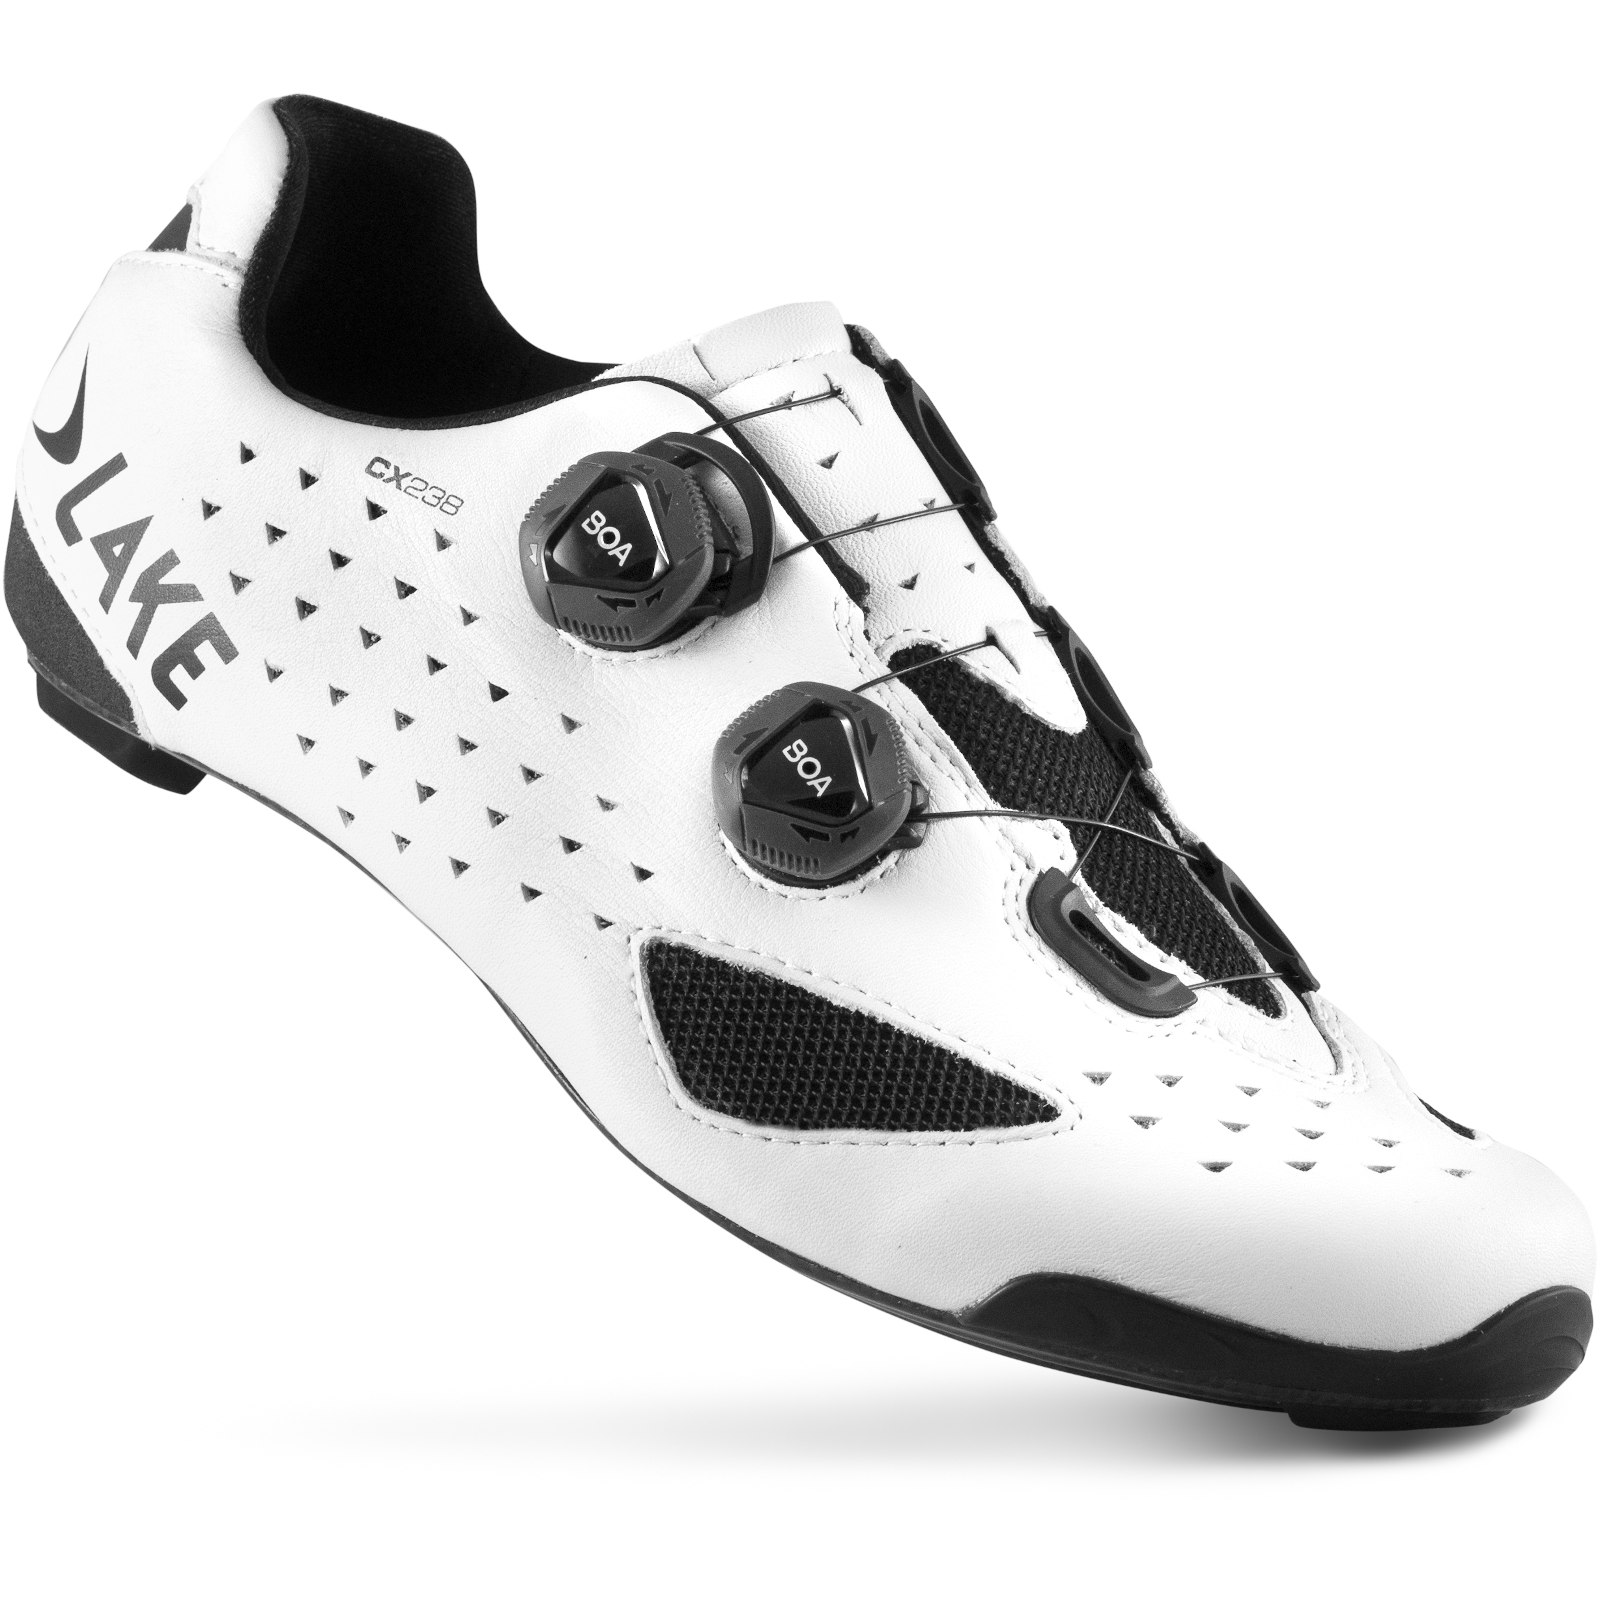 Productfoto van Lake CX238 Racefietsschoenen - wit/wit